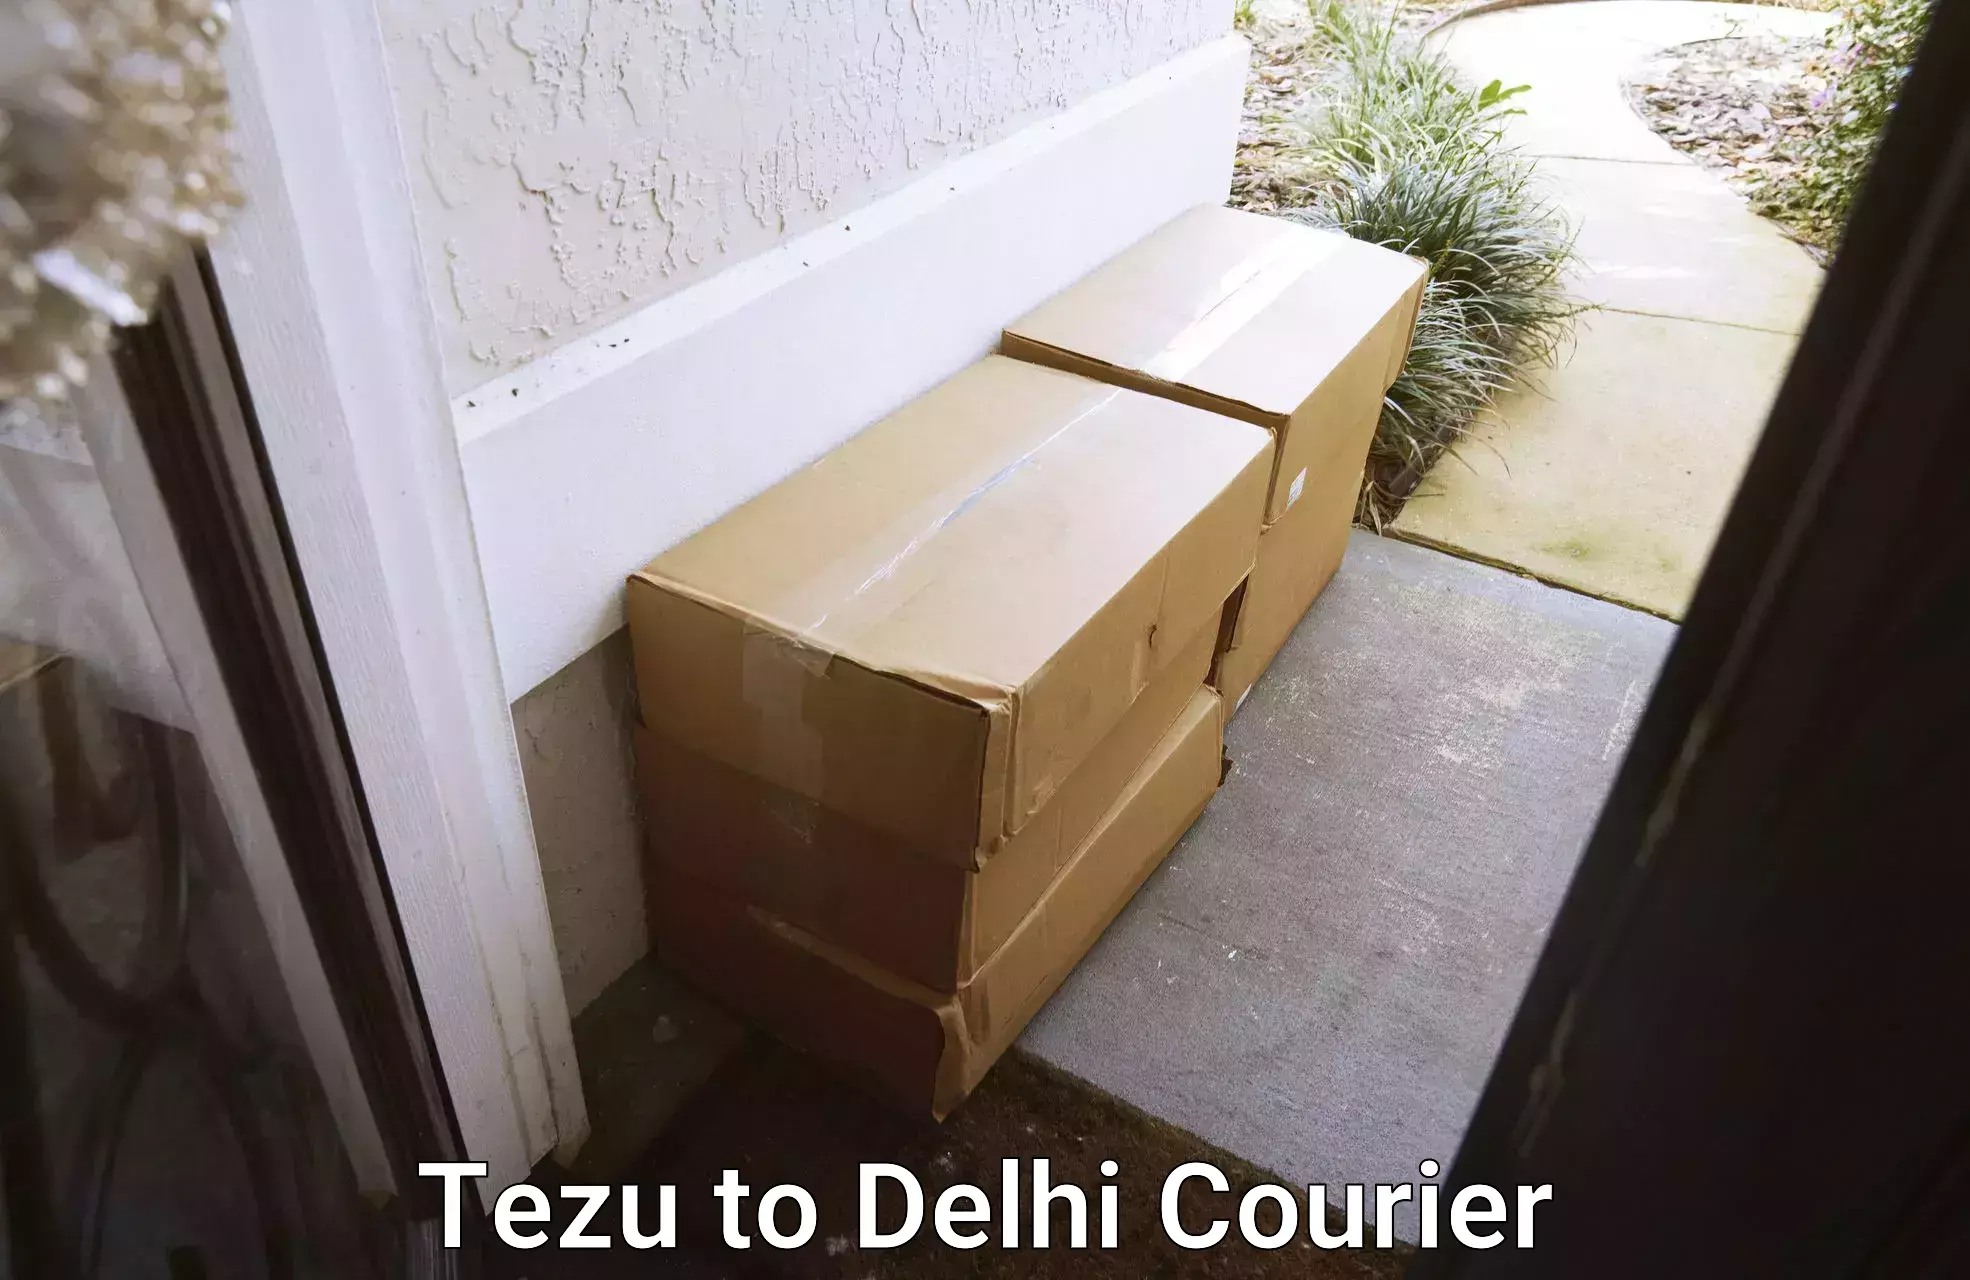 Efficient parcel transport Tezu to Delhi